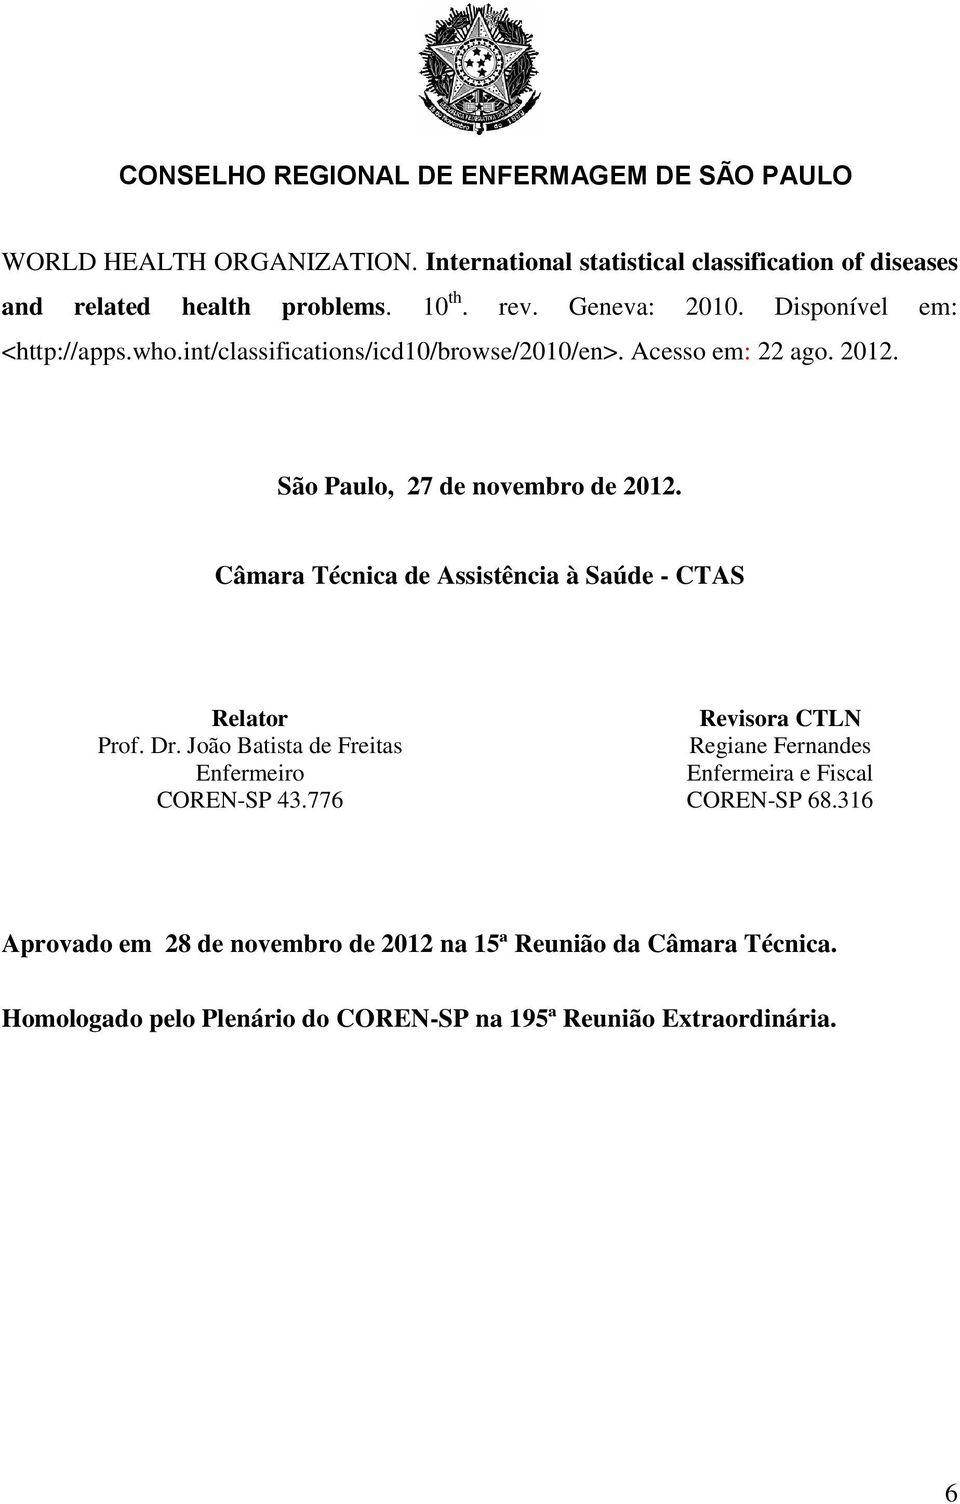 Câmara Técnica de Assistência à Saúde - CTAS Relator Prof. Dr. João Batista de Freitas Enfermeiro COREN-SP 43.